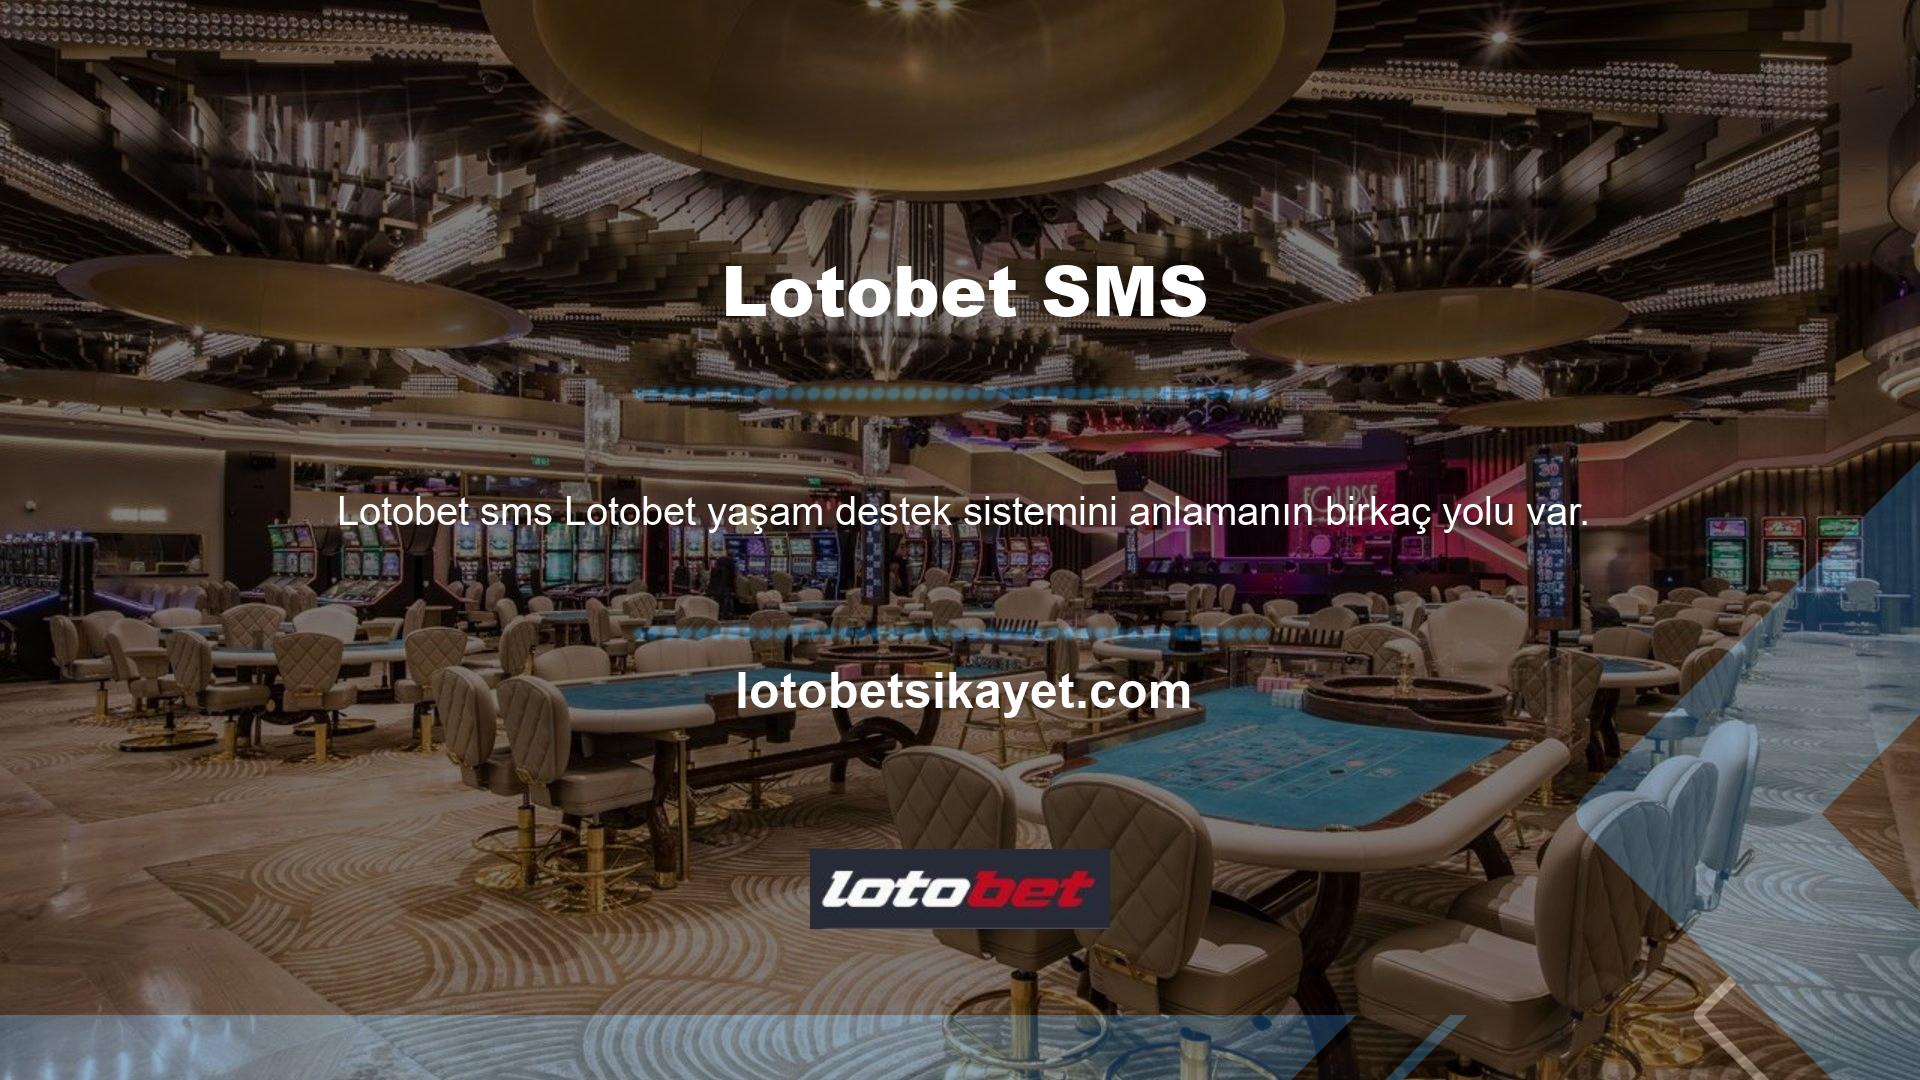 Biri "Lotobet SMS" olarak tanımlandı